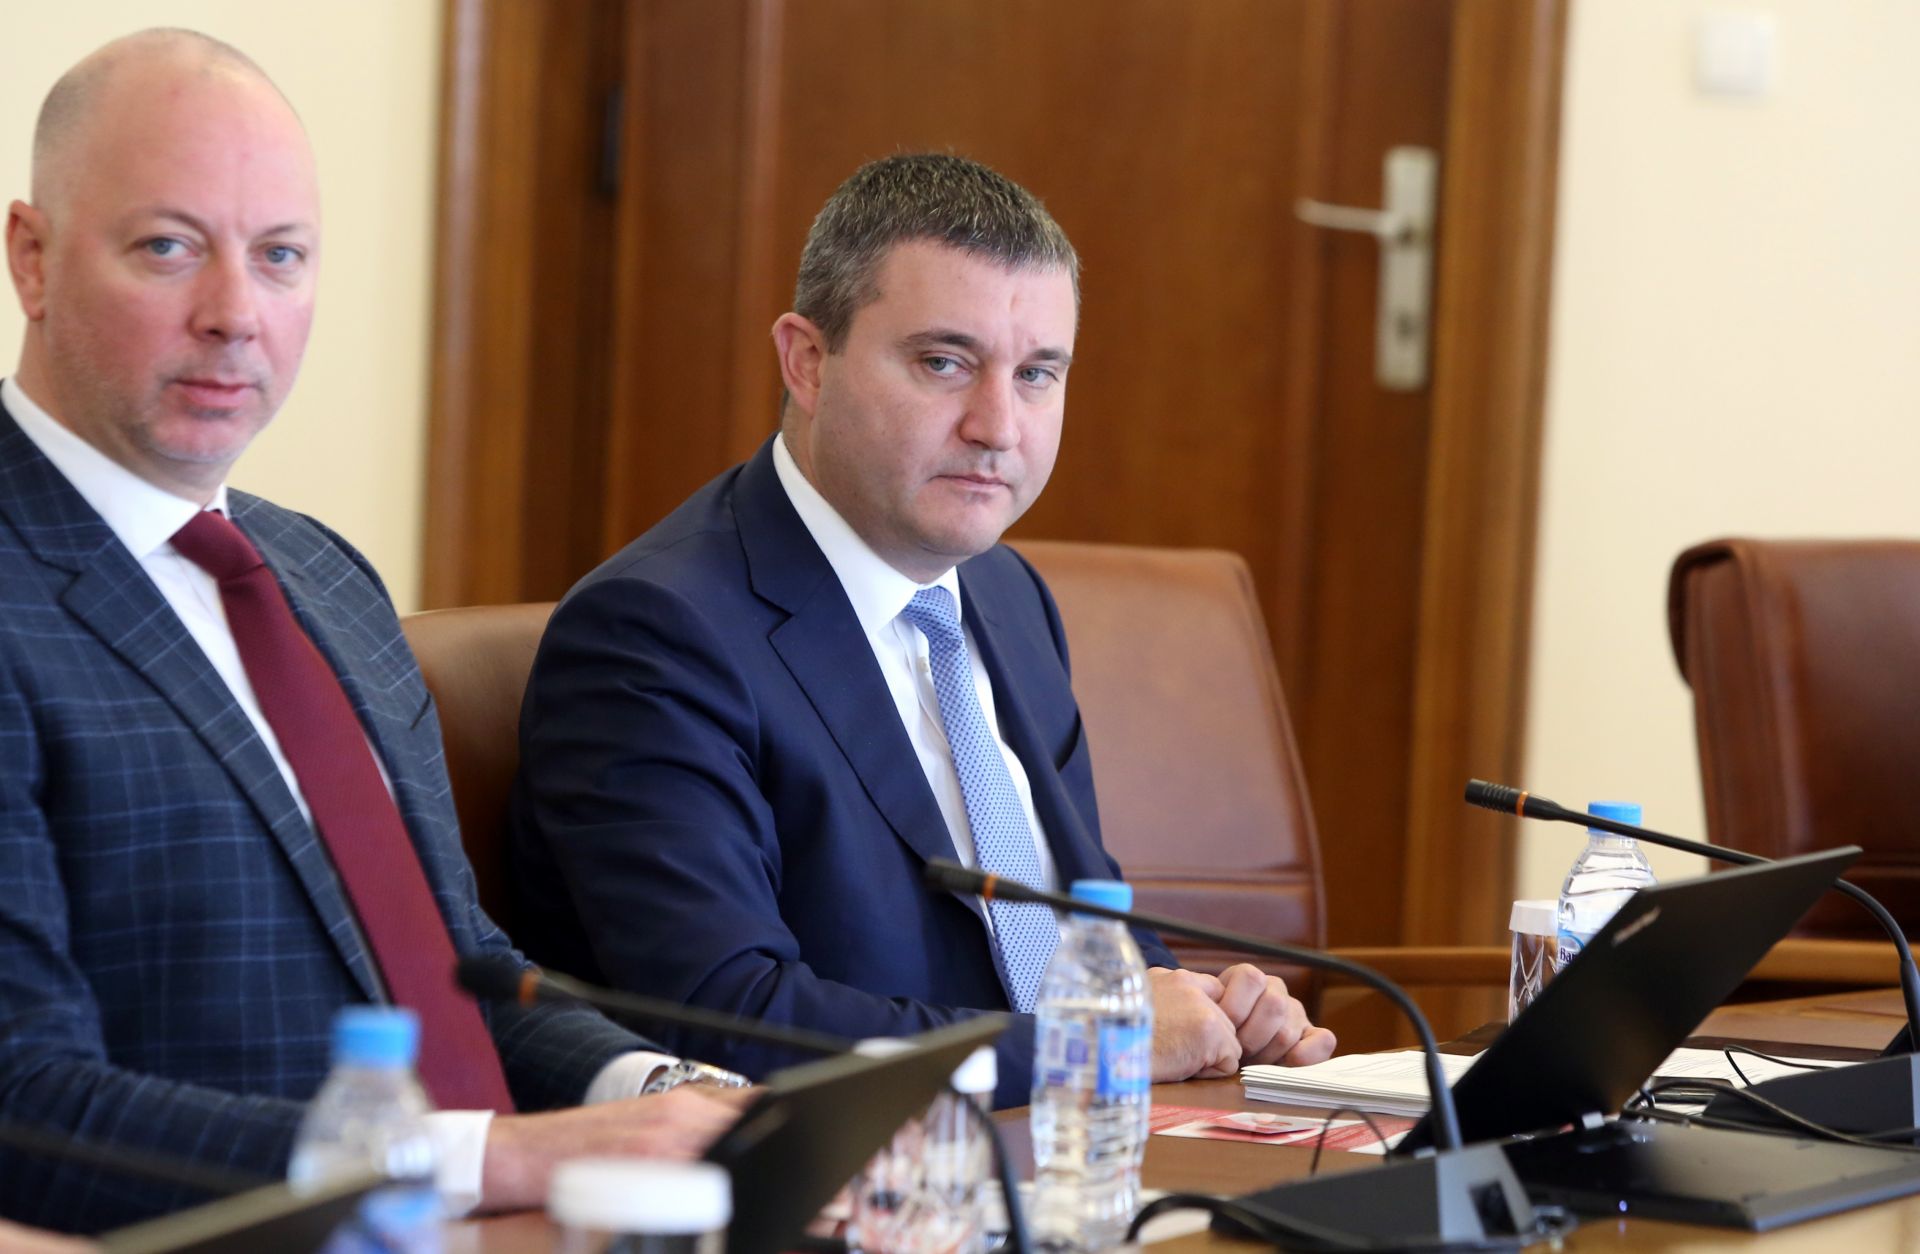 Личната вражда между двама човека не може да наруши рамките на Конституцията, каза Владислав Горанов